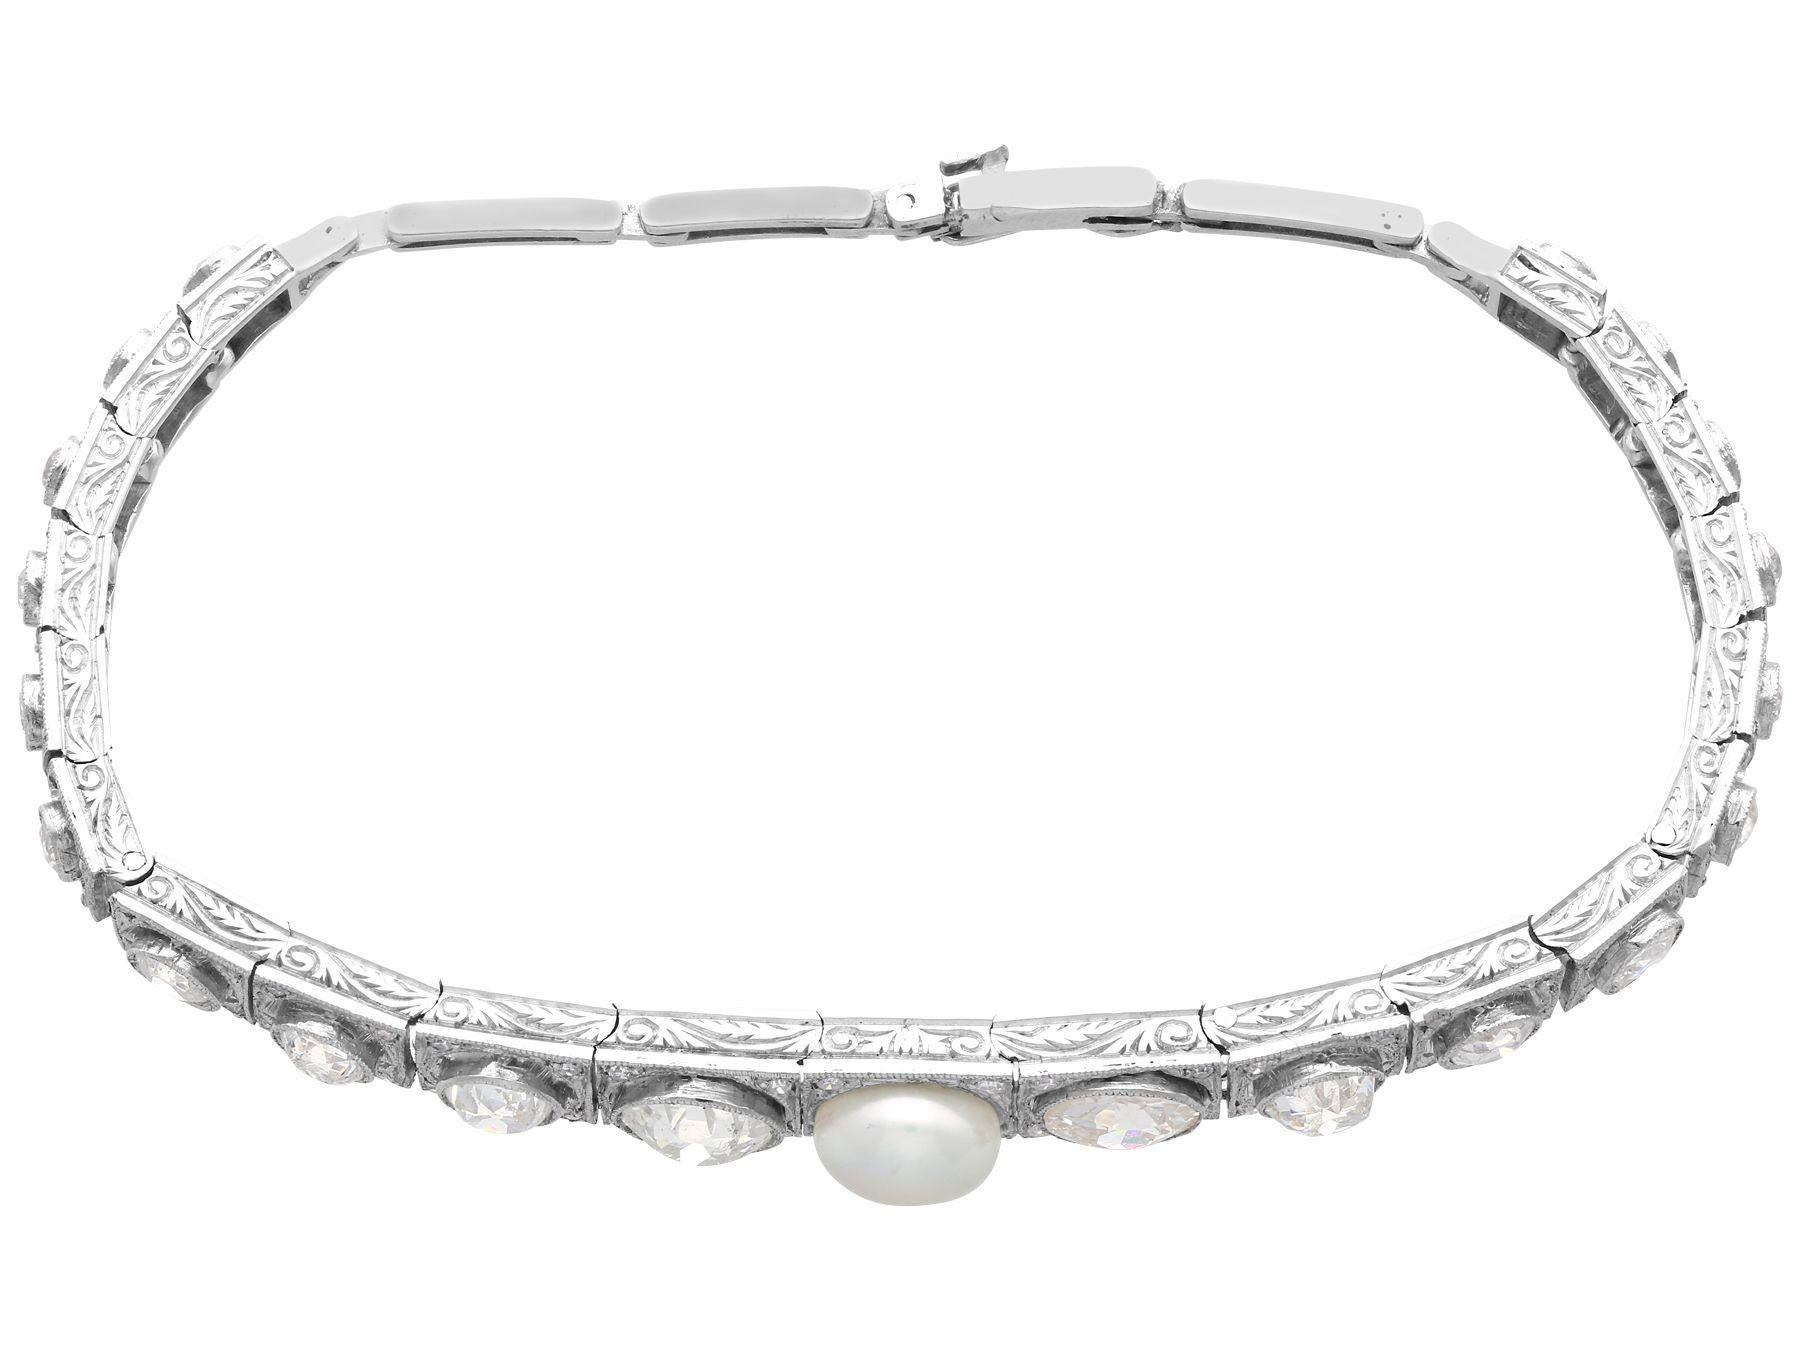 Ce superbe, fin et impressionnant bracelet ancien en perles et diamants a été réalisé en or blanc 18 carats.

Le bracelet à maillons articulés est orné de vingt diamants de taille ronde de type vieille Europe, sertis individuellement dans des